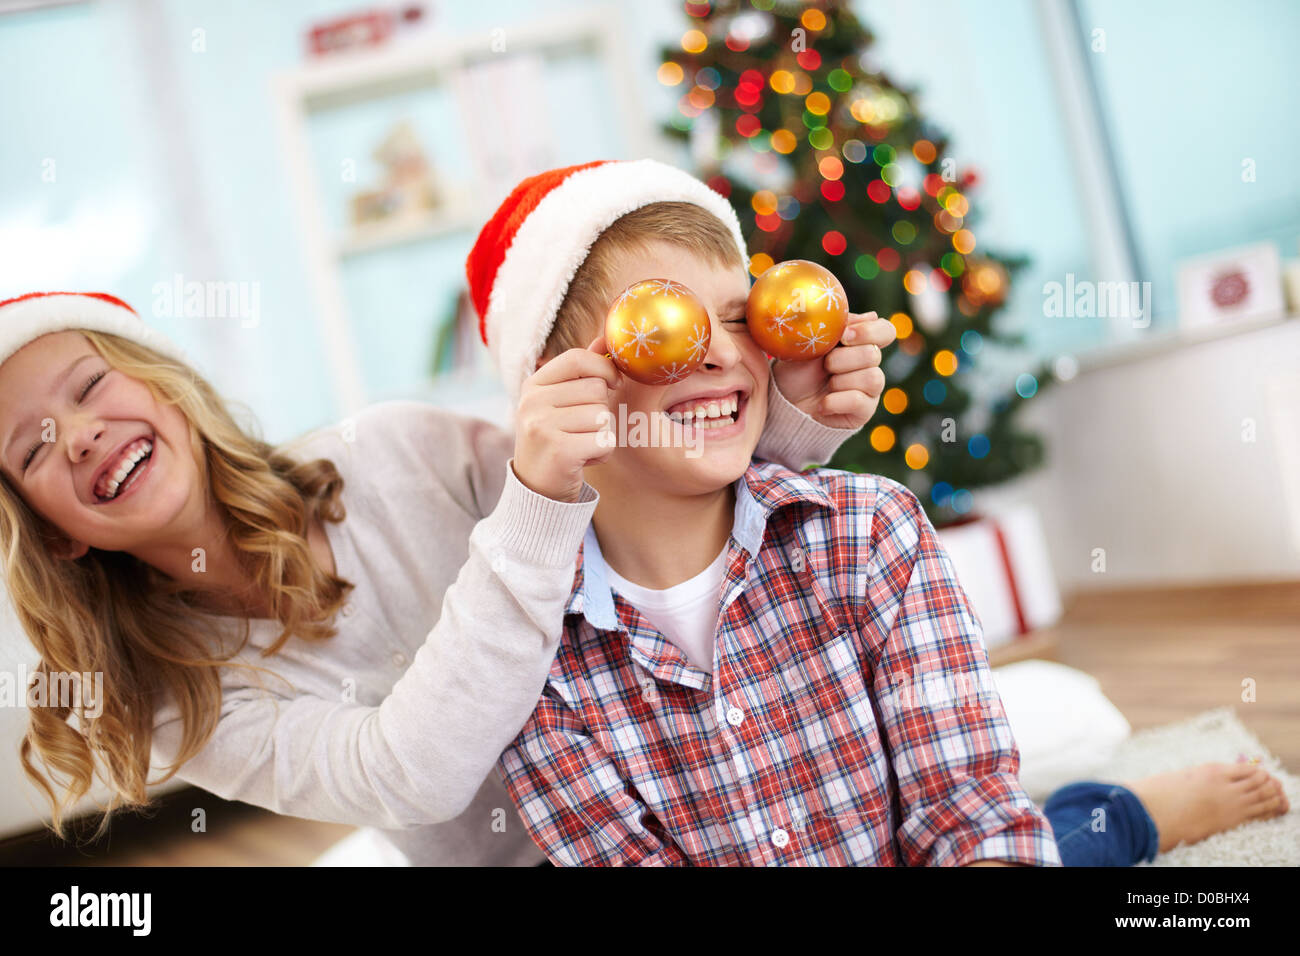 Ritratto di felice ragazza con decorativi sfere giocattolo da suo fratello negli occhi e entrambi a ridere della sera di Natale Foto Stock